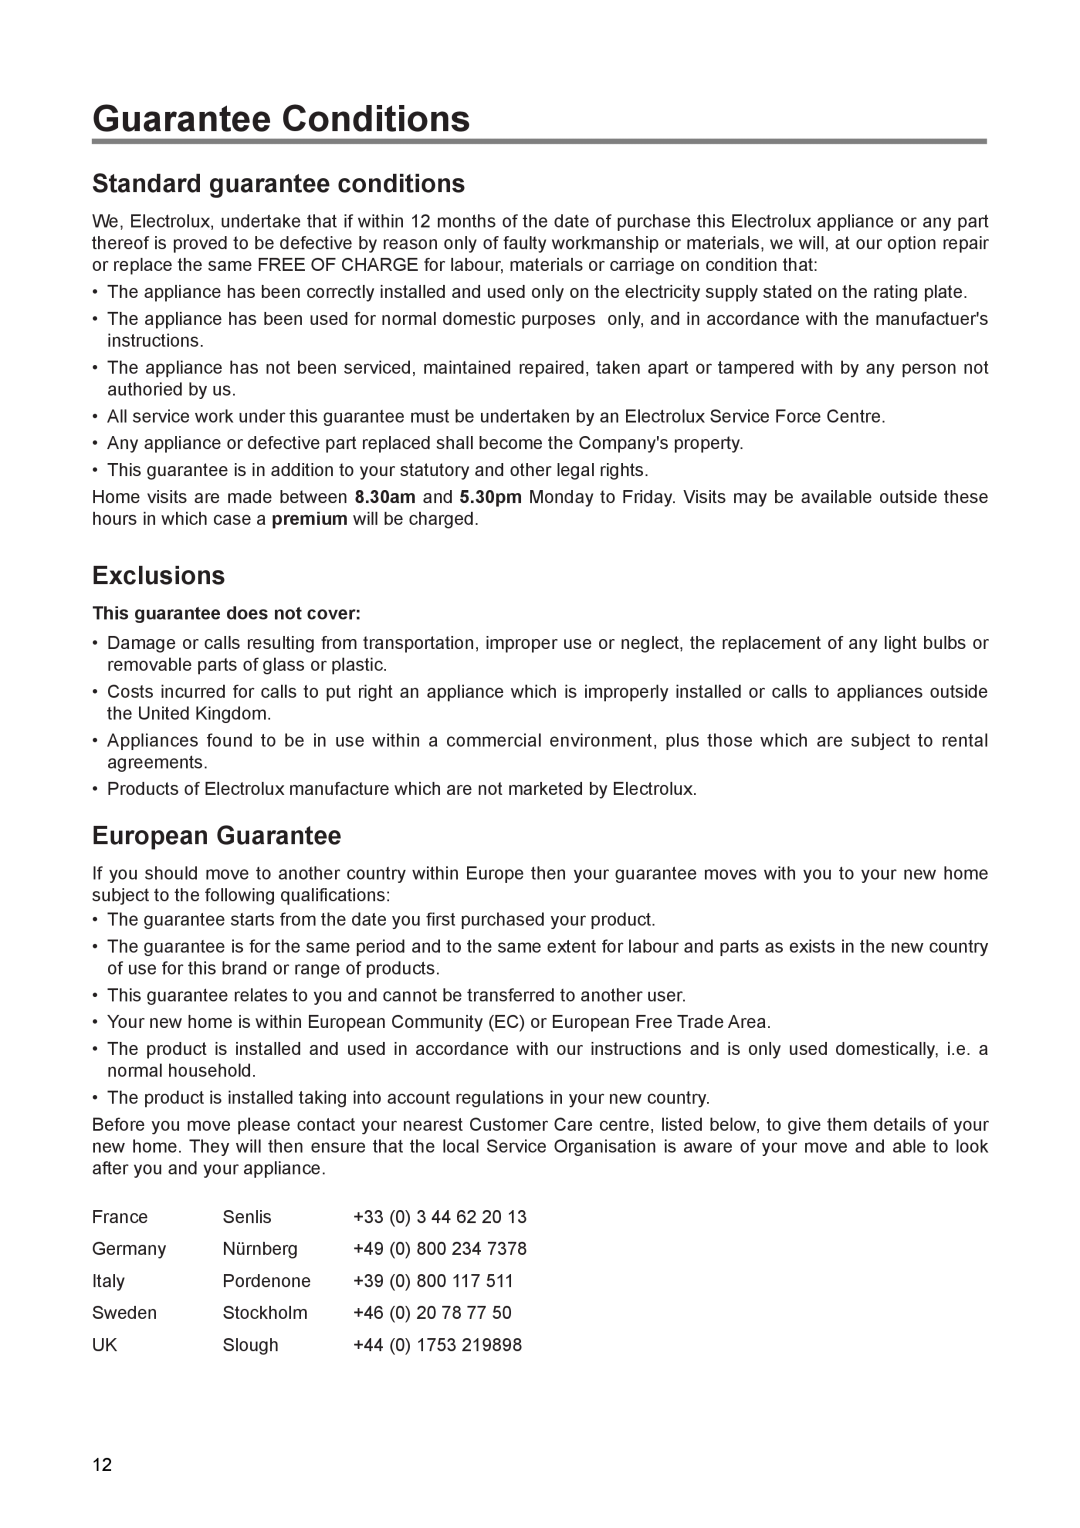 Electrolux EUN 1272 manual Guarantee Conditions, Standard guarantee conditions, Exclusions, European Guarantee 